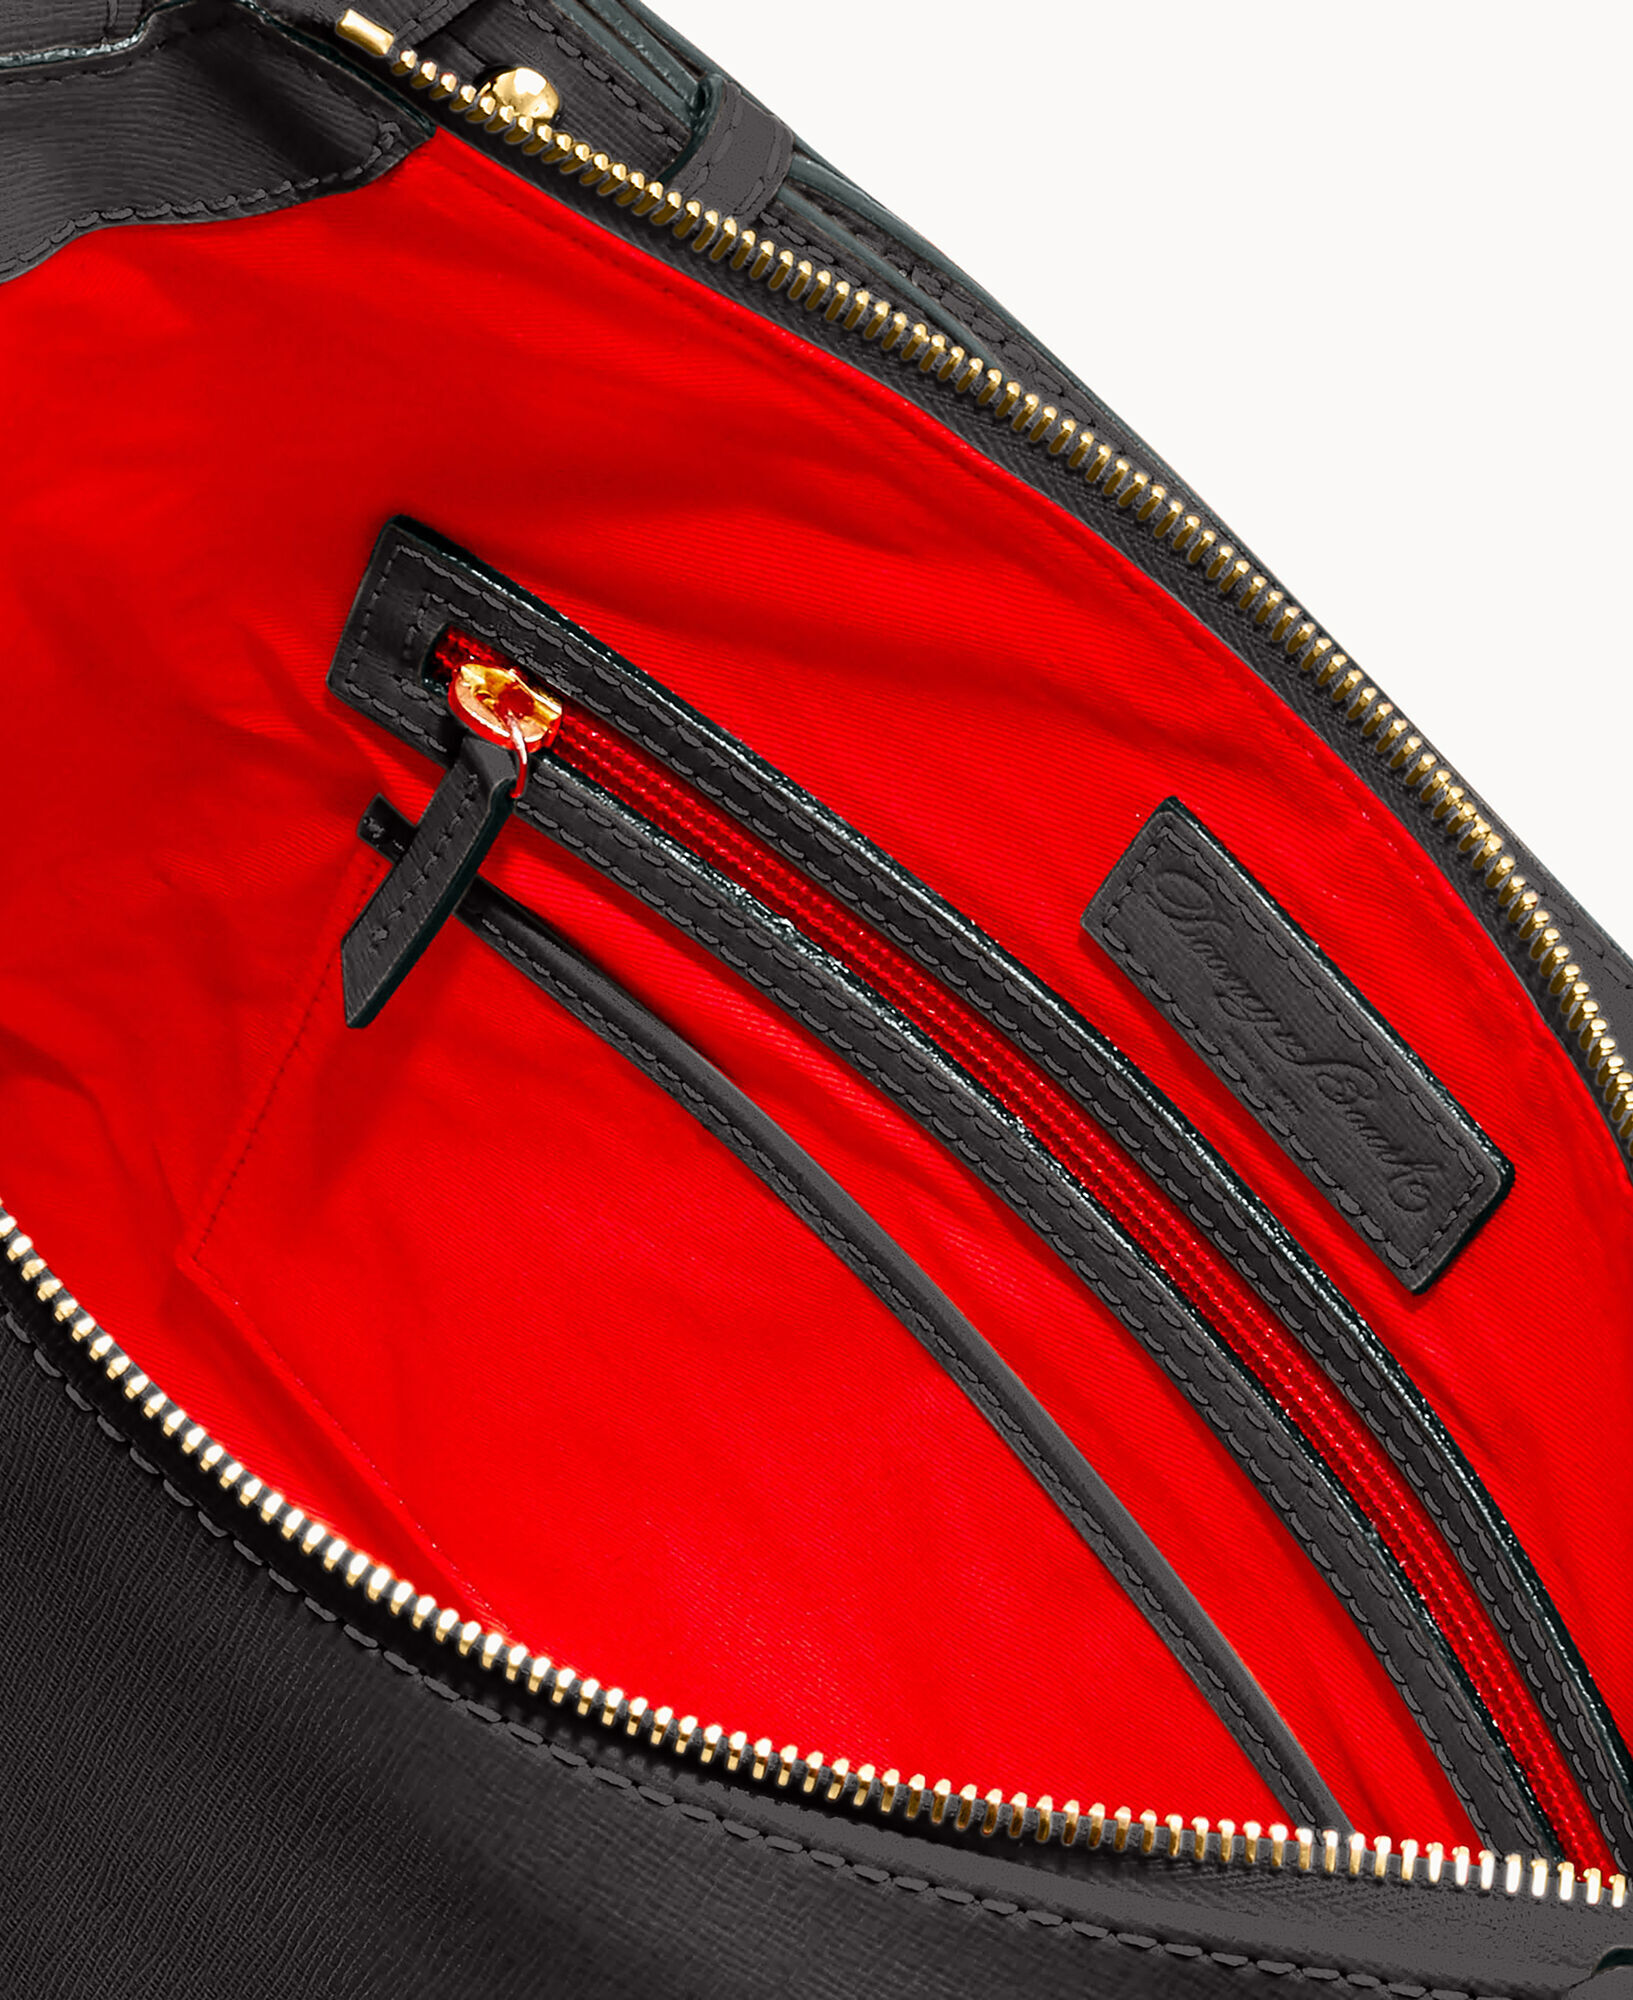 DOONEY & BOURKE #36204 Burgundy Saffiano Leather Hobo Shoulder Bag